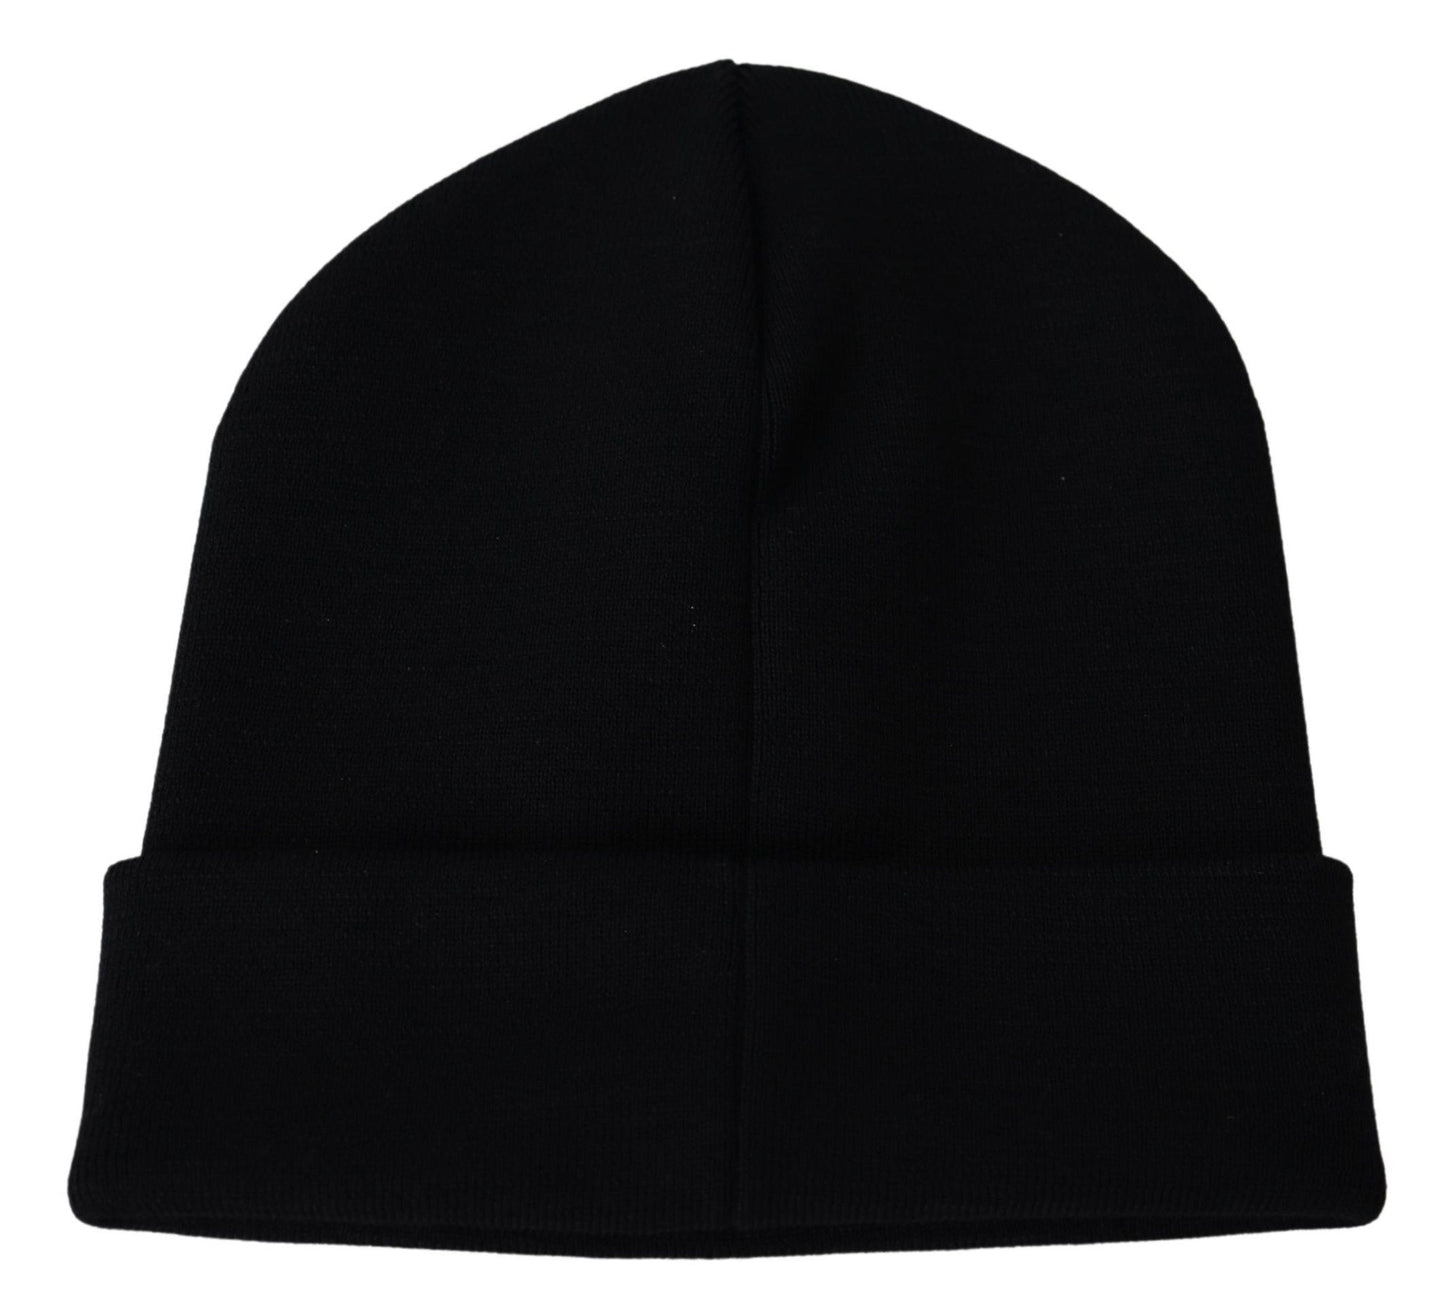 Lana nera givenchy unisex un cappello da berretto caldo invernale